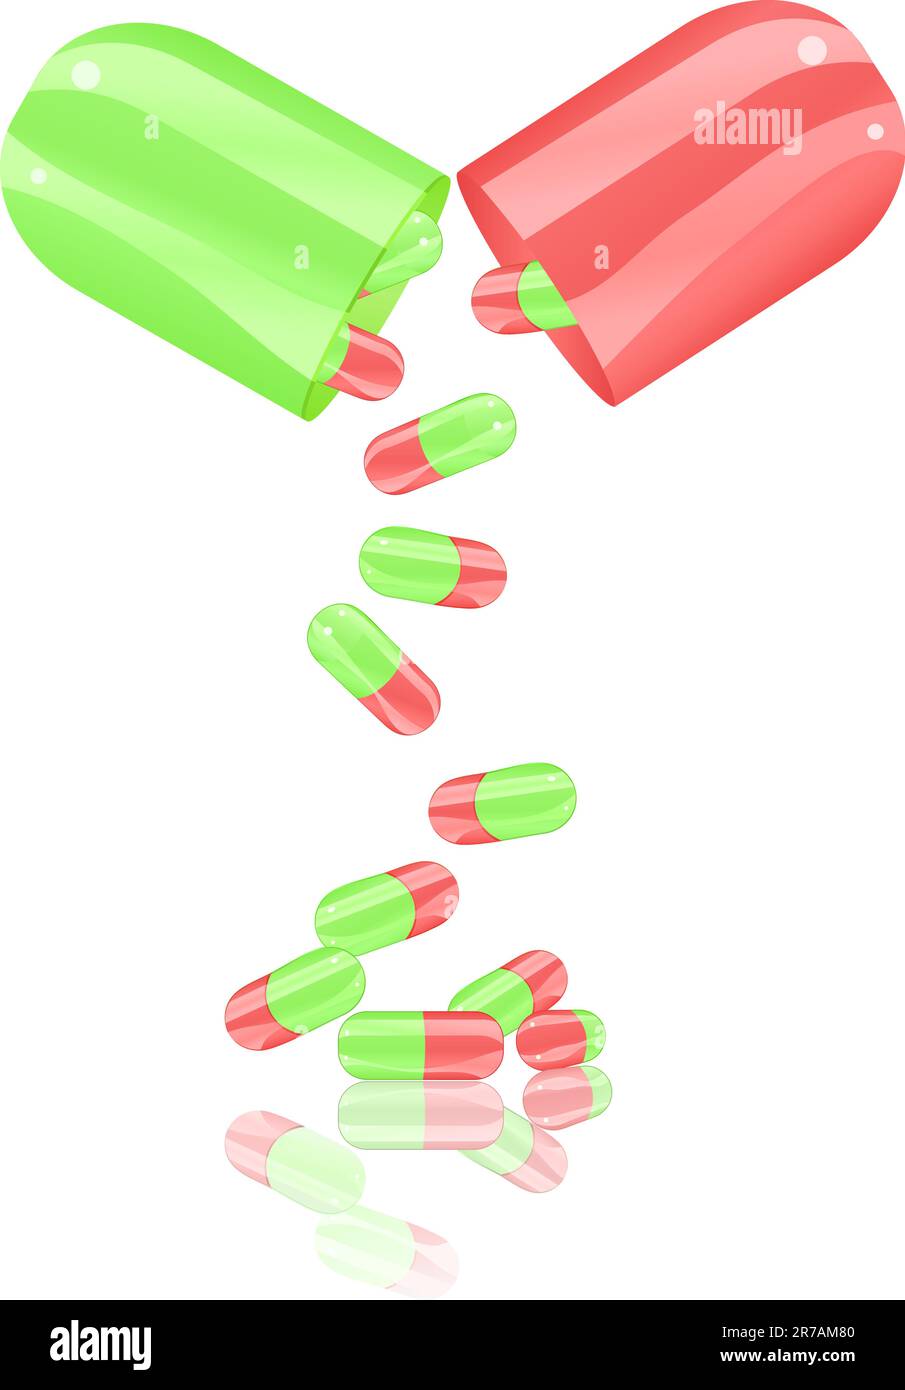 la capsule de la pilule ouverte isole sur fond blanc. Illustration vectorielle EPS8 Illustration de Vecteur